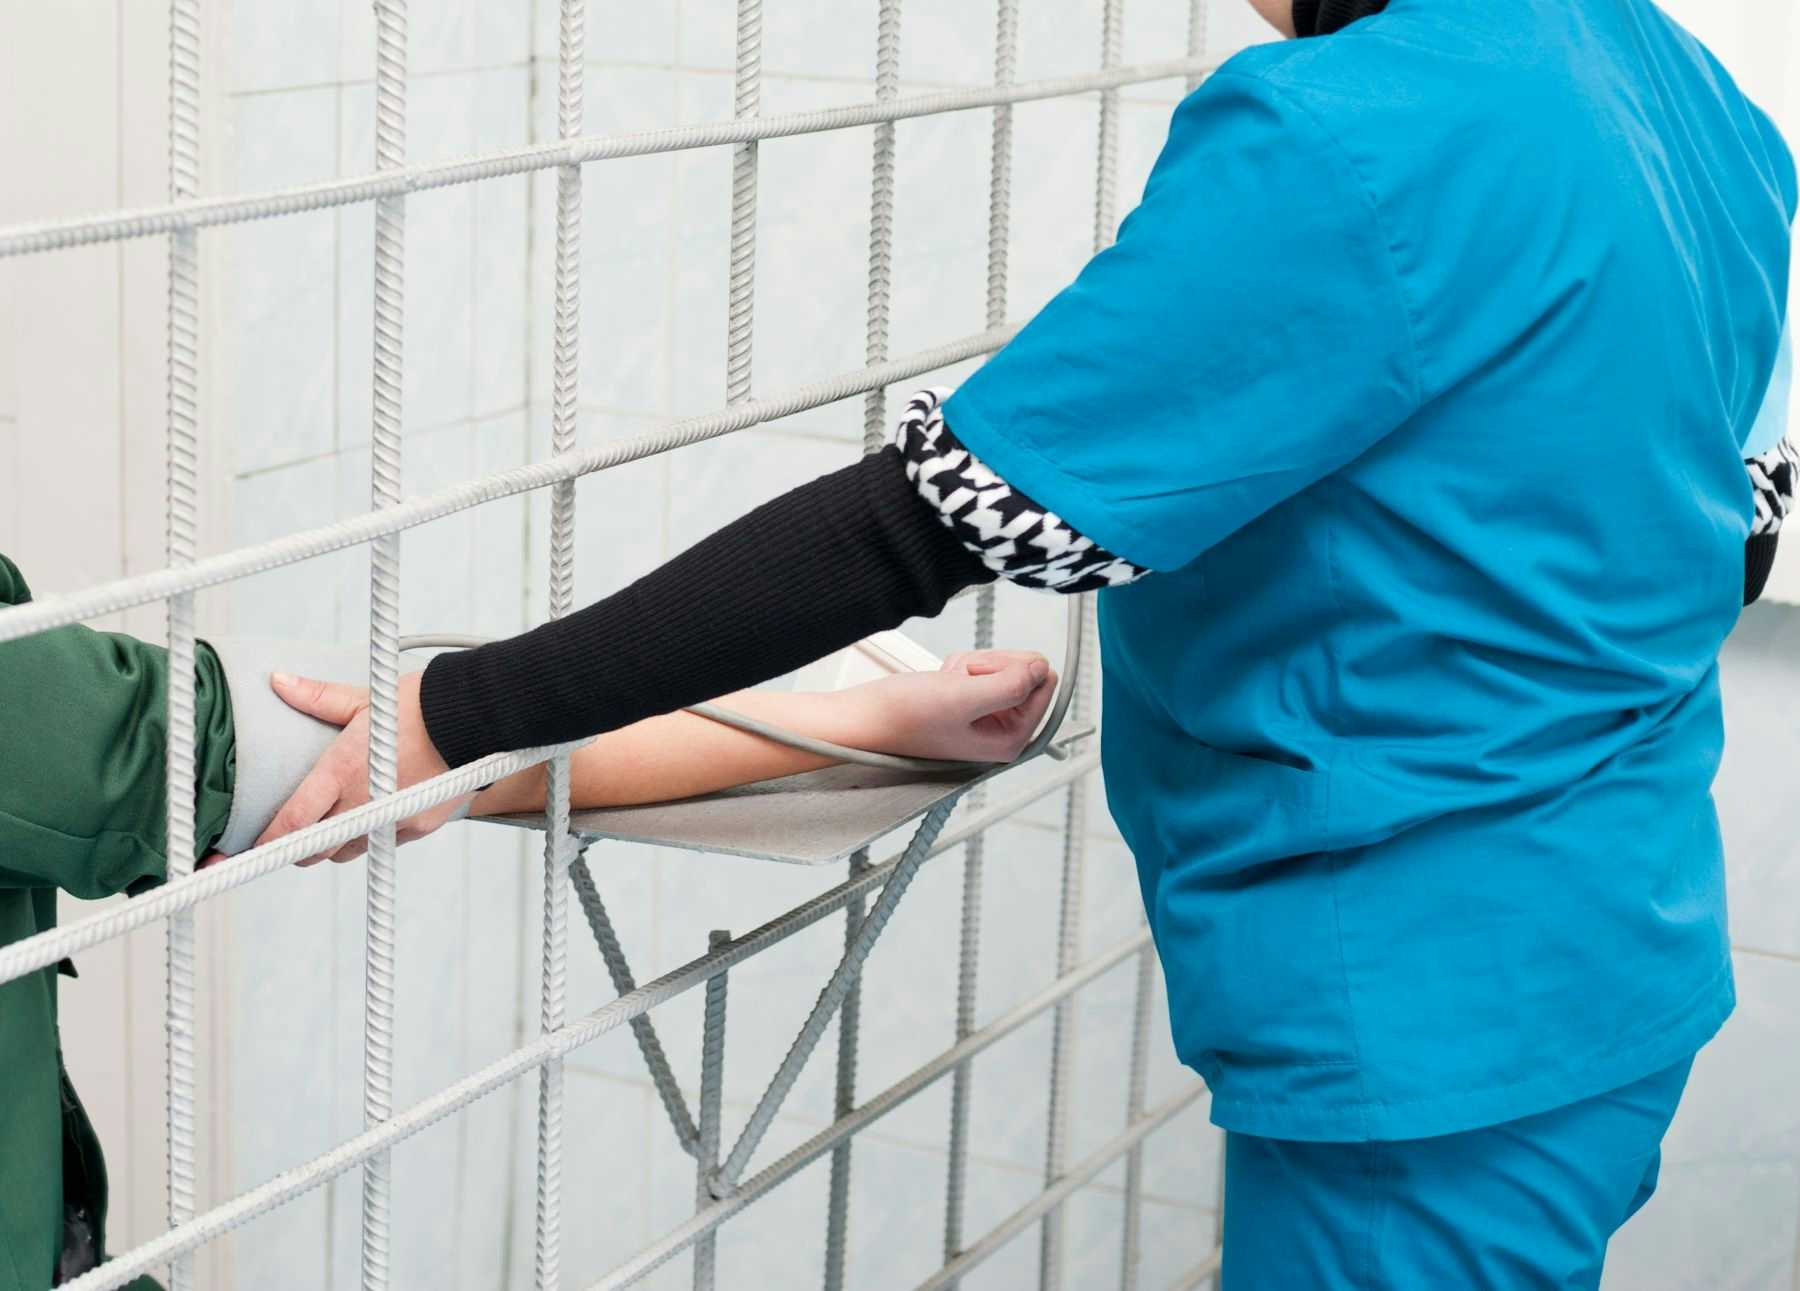 Nurse treating inmate